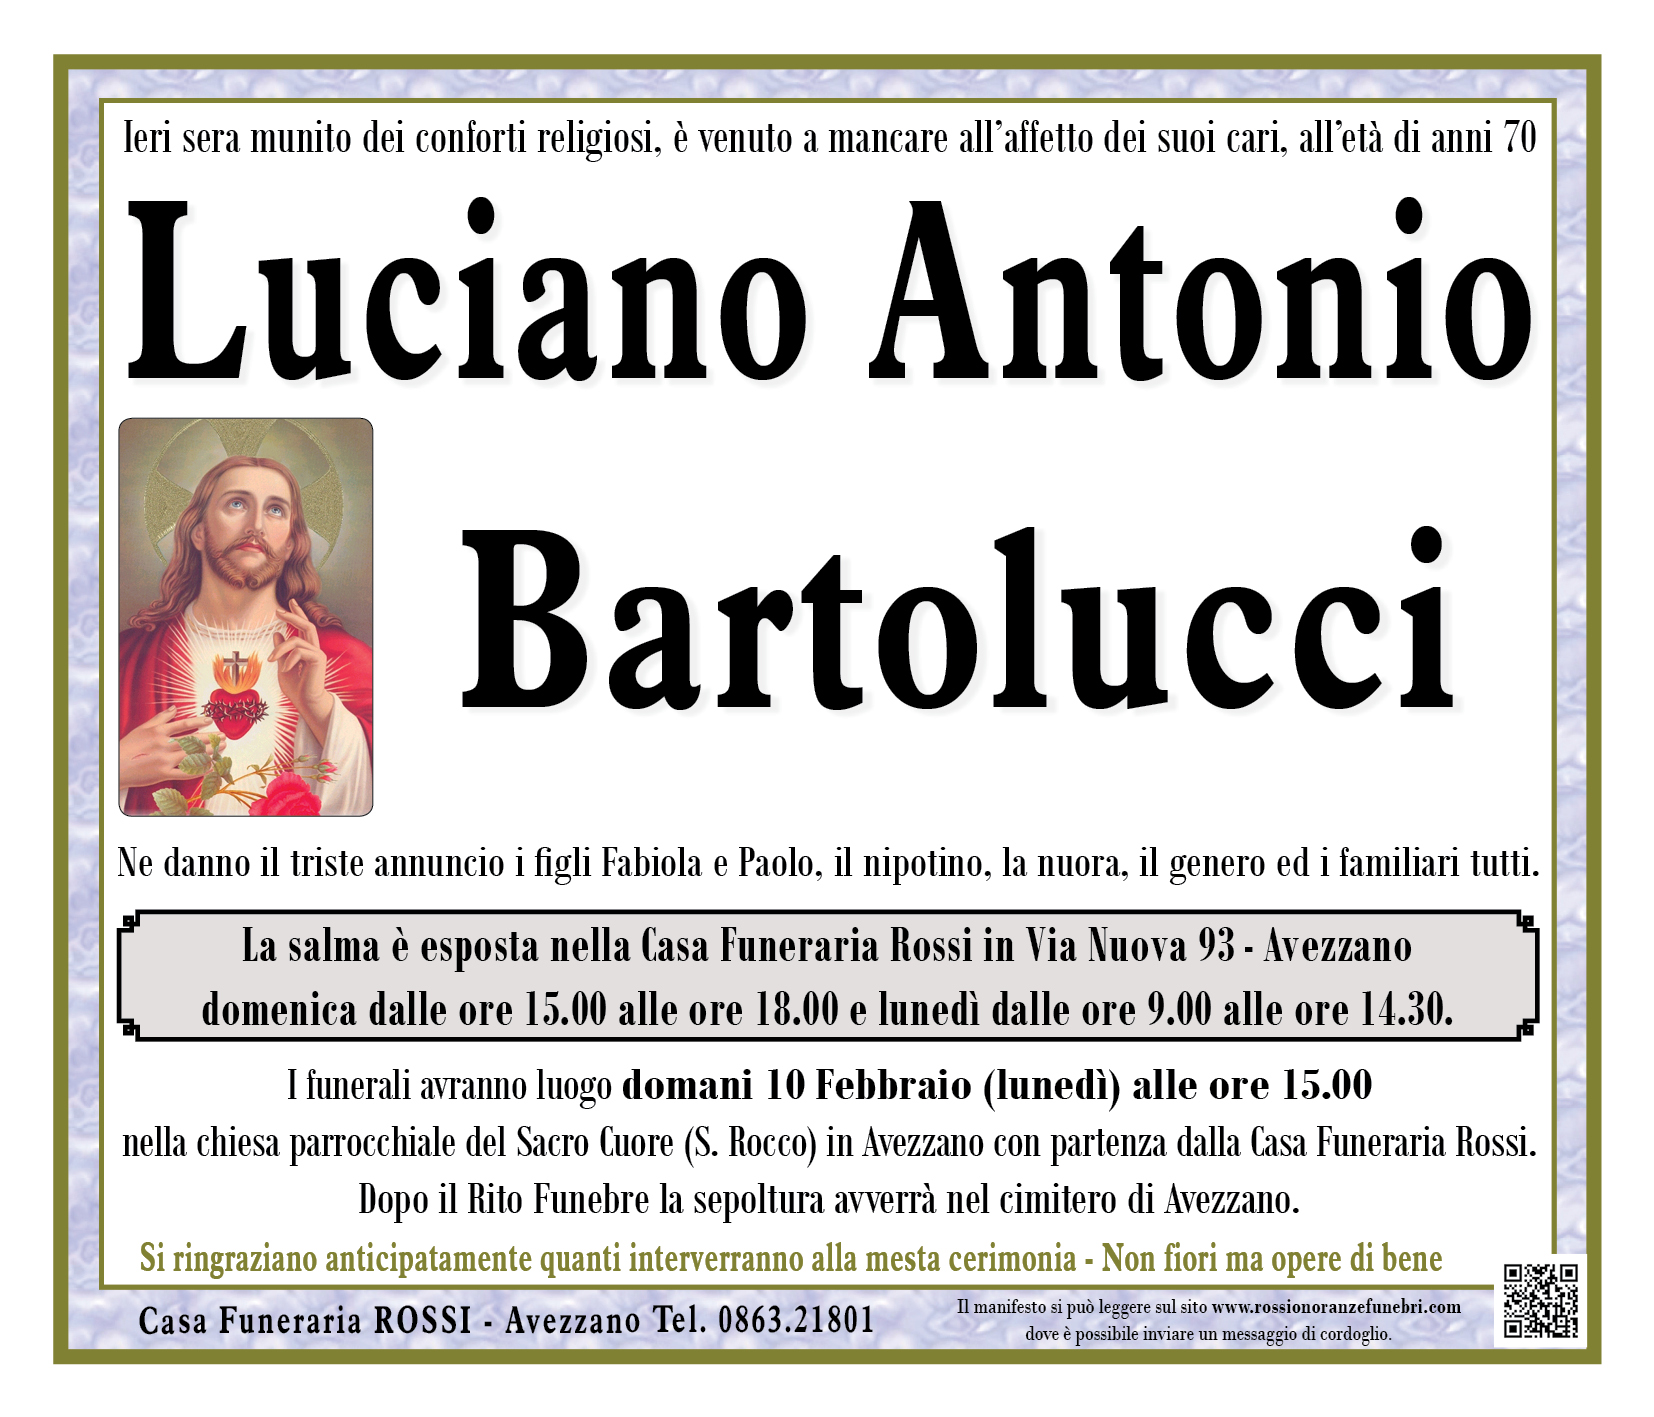 Luciano Antonio Bartolucci